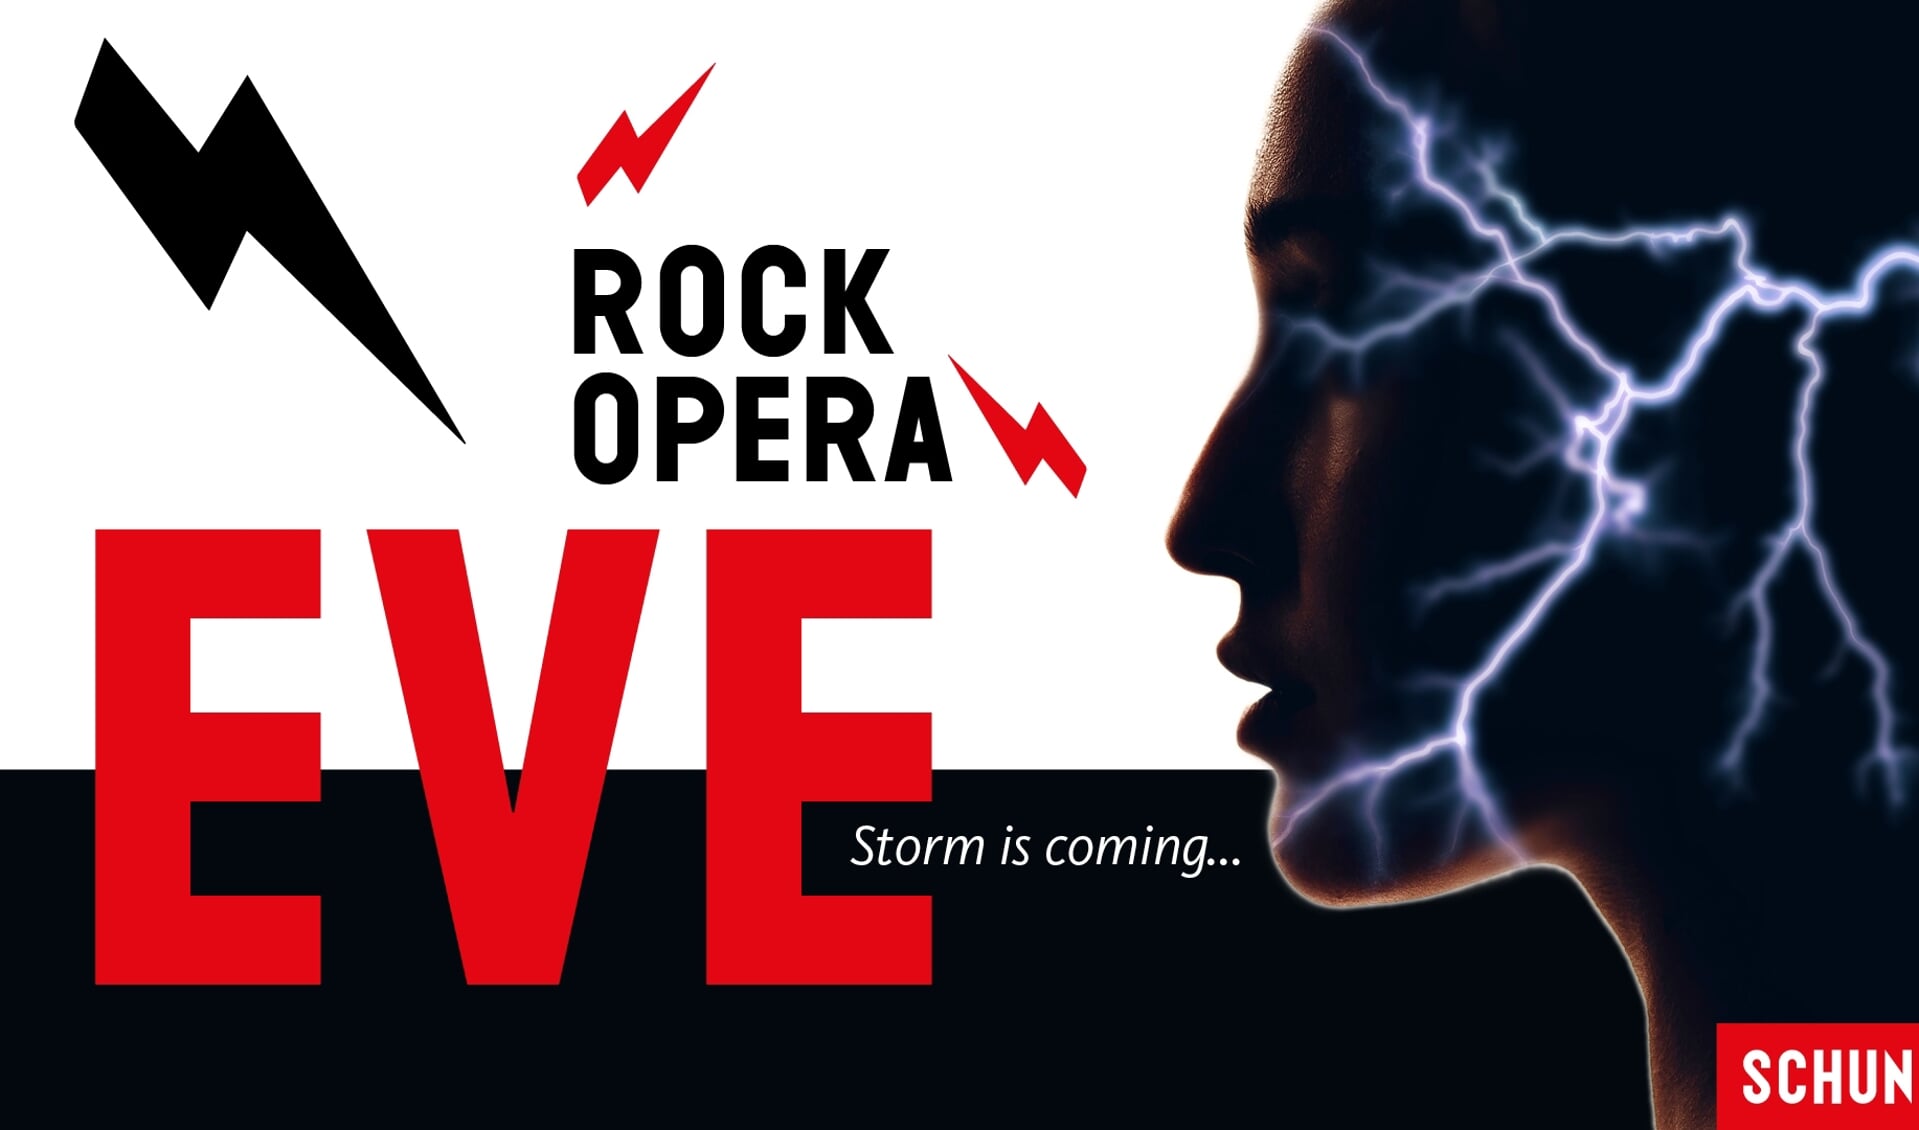 Rockopera EVE, Storm is coming komt naar Schouwburg Venray. 